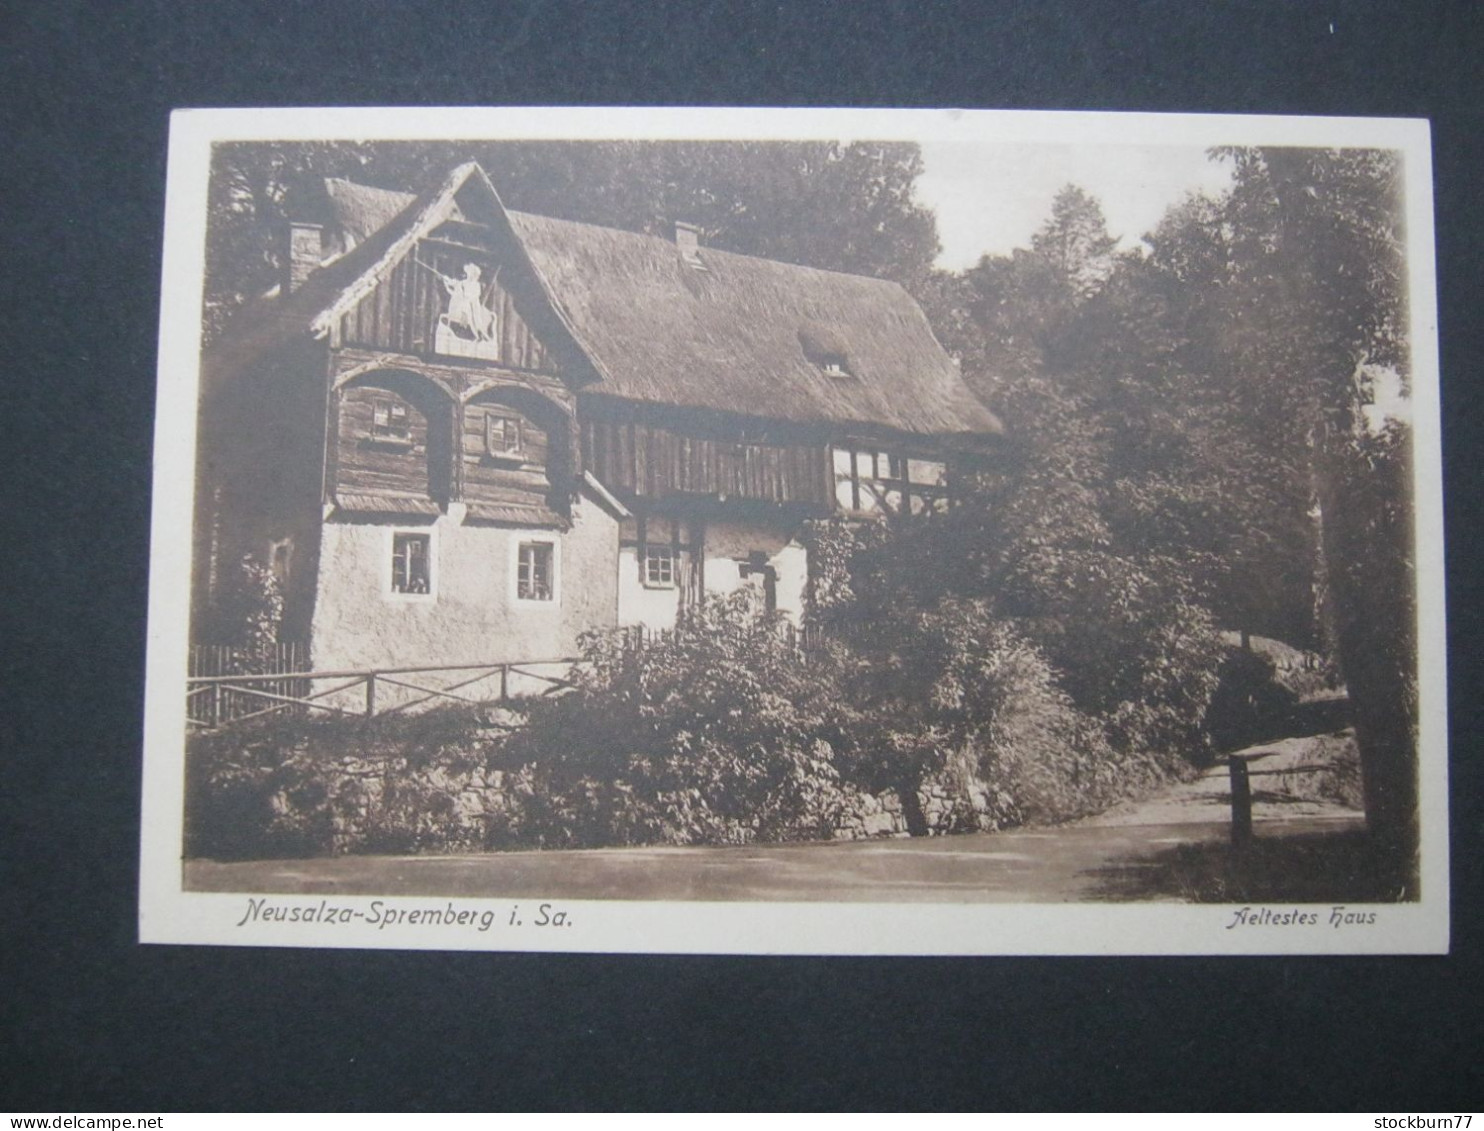 NEUSALZA - Spremberg, Schöne  Karte Um 1935 - Neusalza-Spremberg